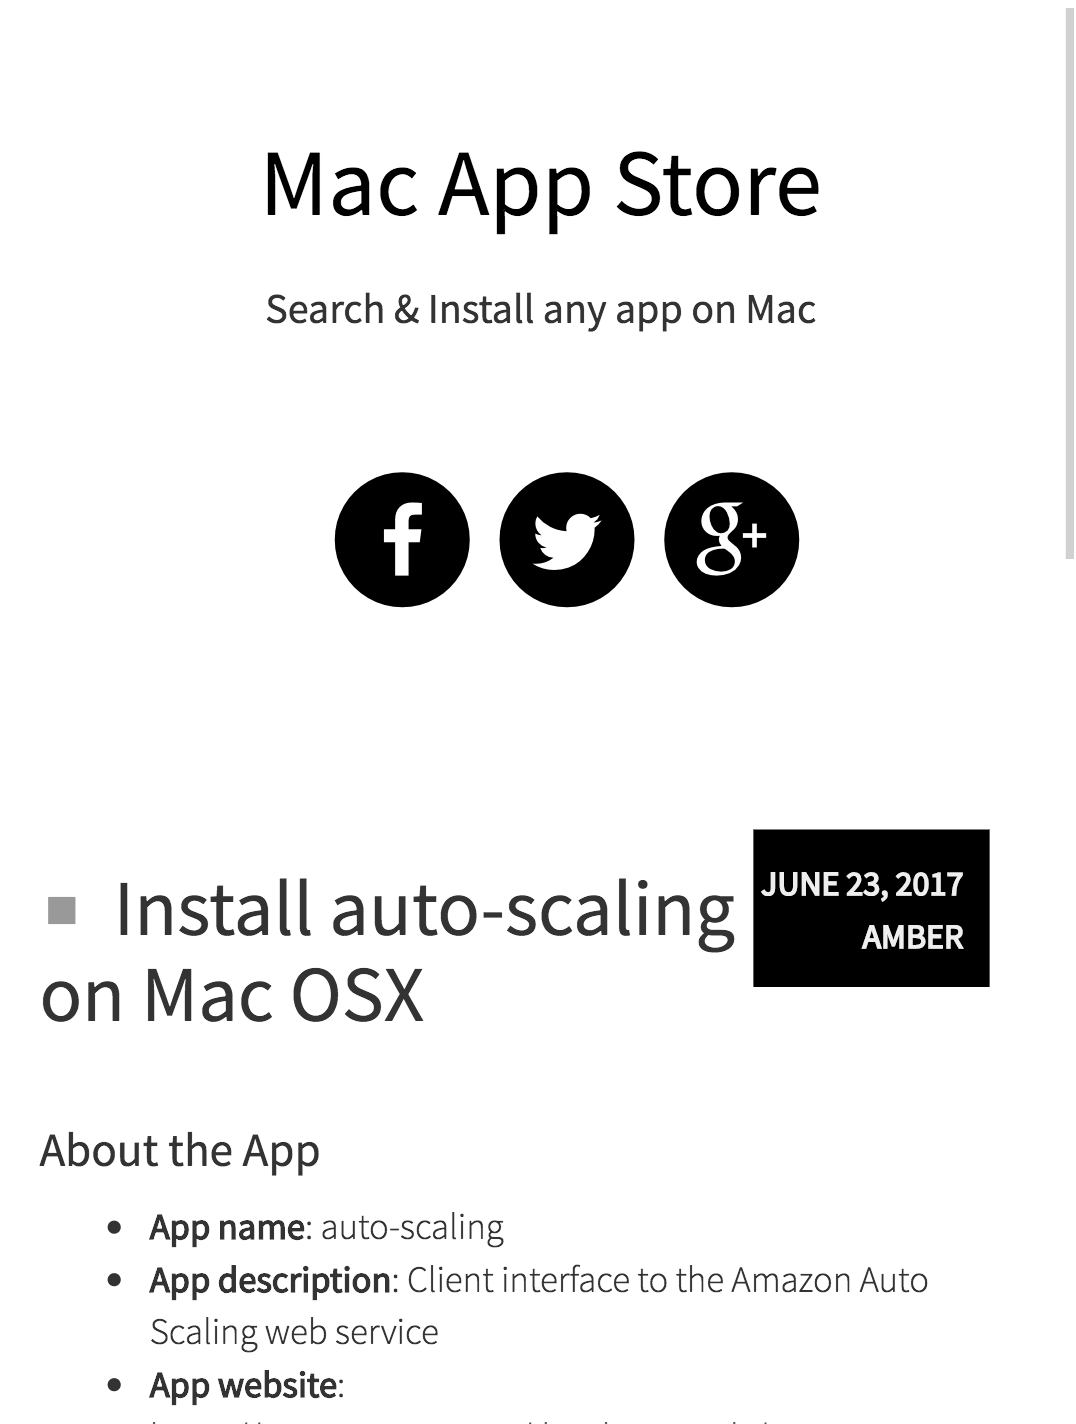 Auto occ install for mac